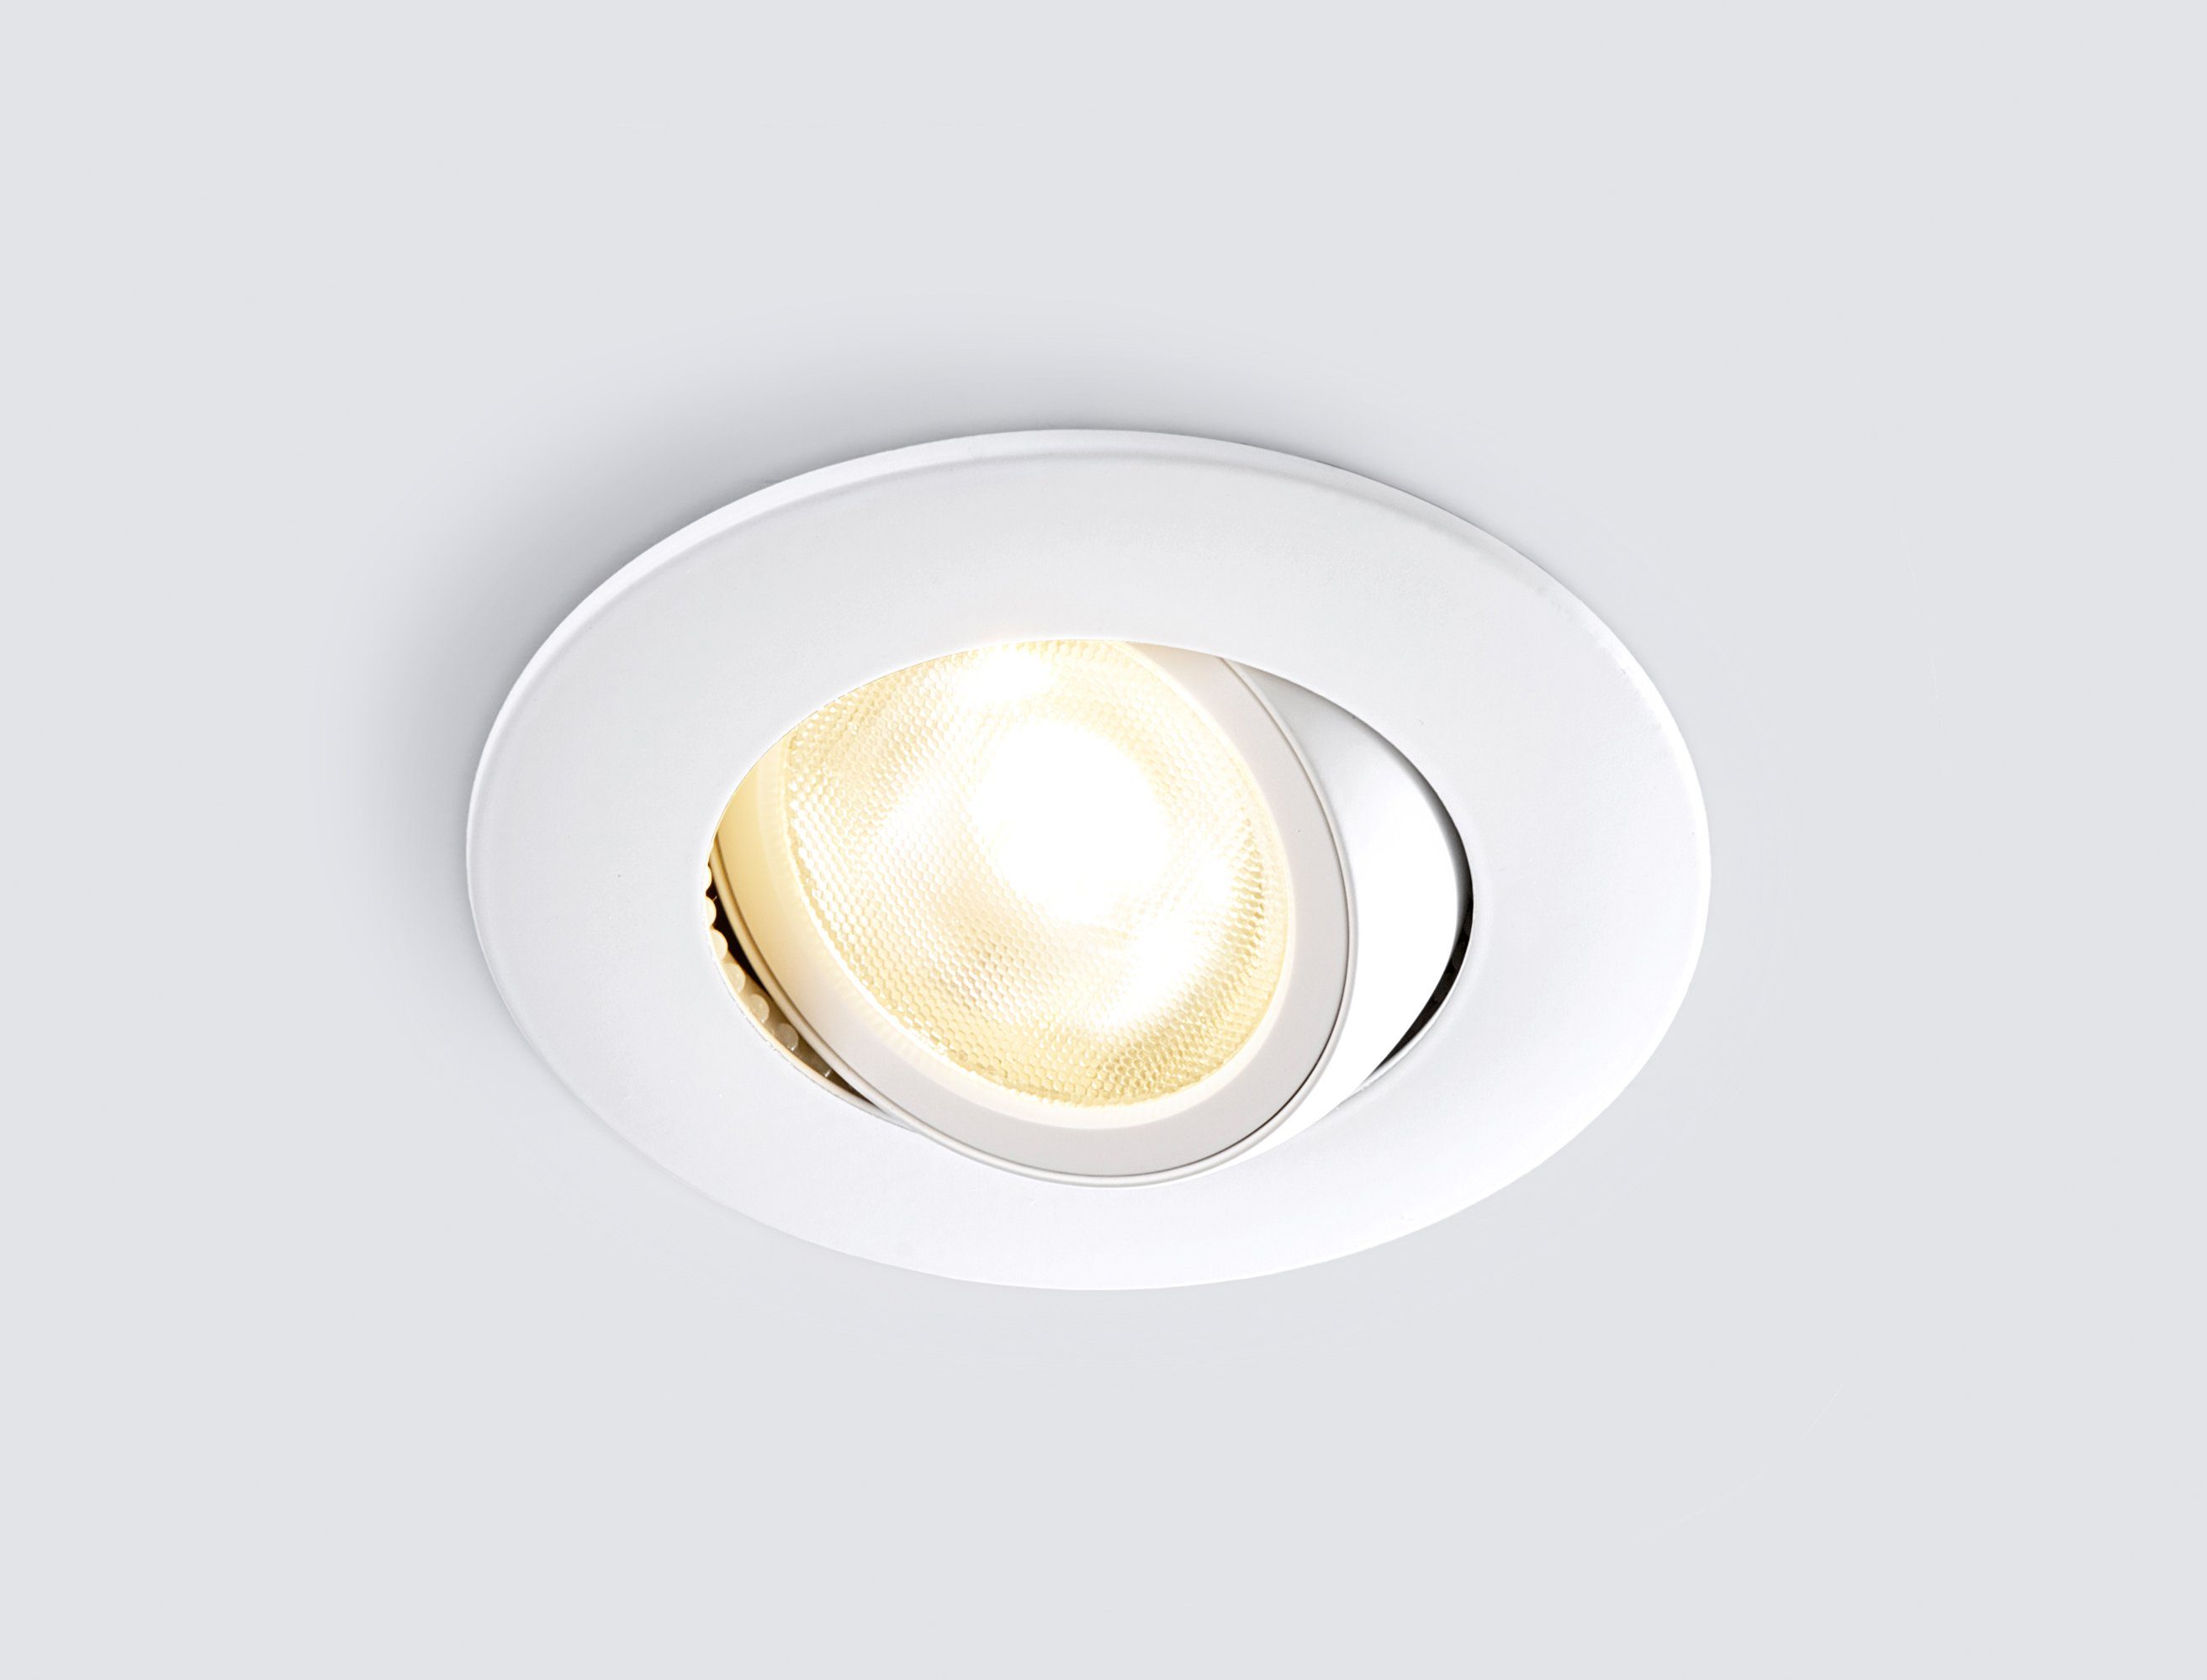 HEITRONIC LED Einbaustrahler DL8002, Dimmfunktion, LED-Downlight, dimmbar und schwenk- LED fest Einbauleuchte, Warmweiß, integriert, Einbaulampe